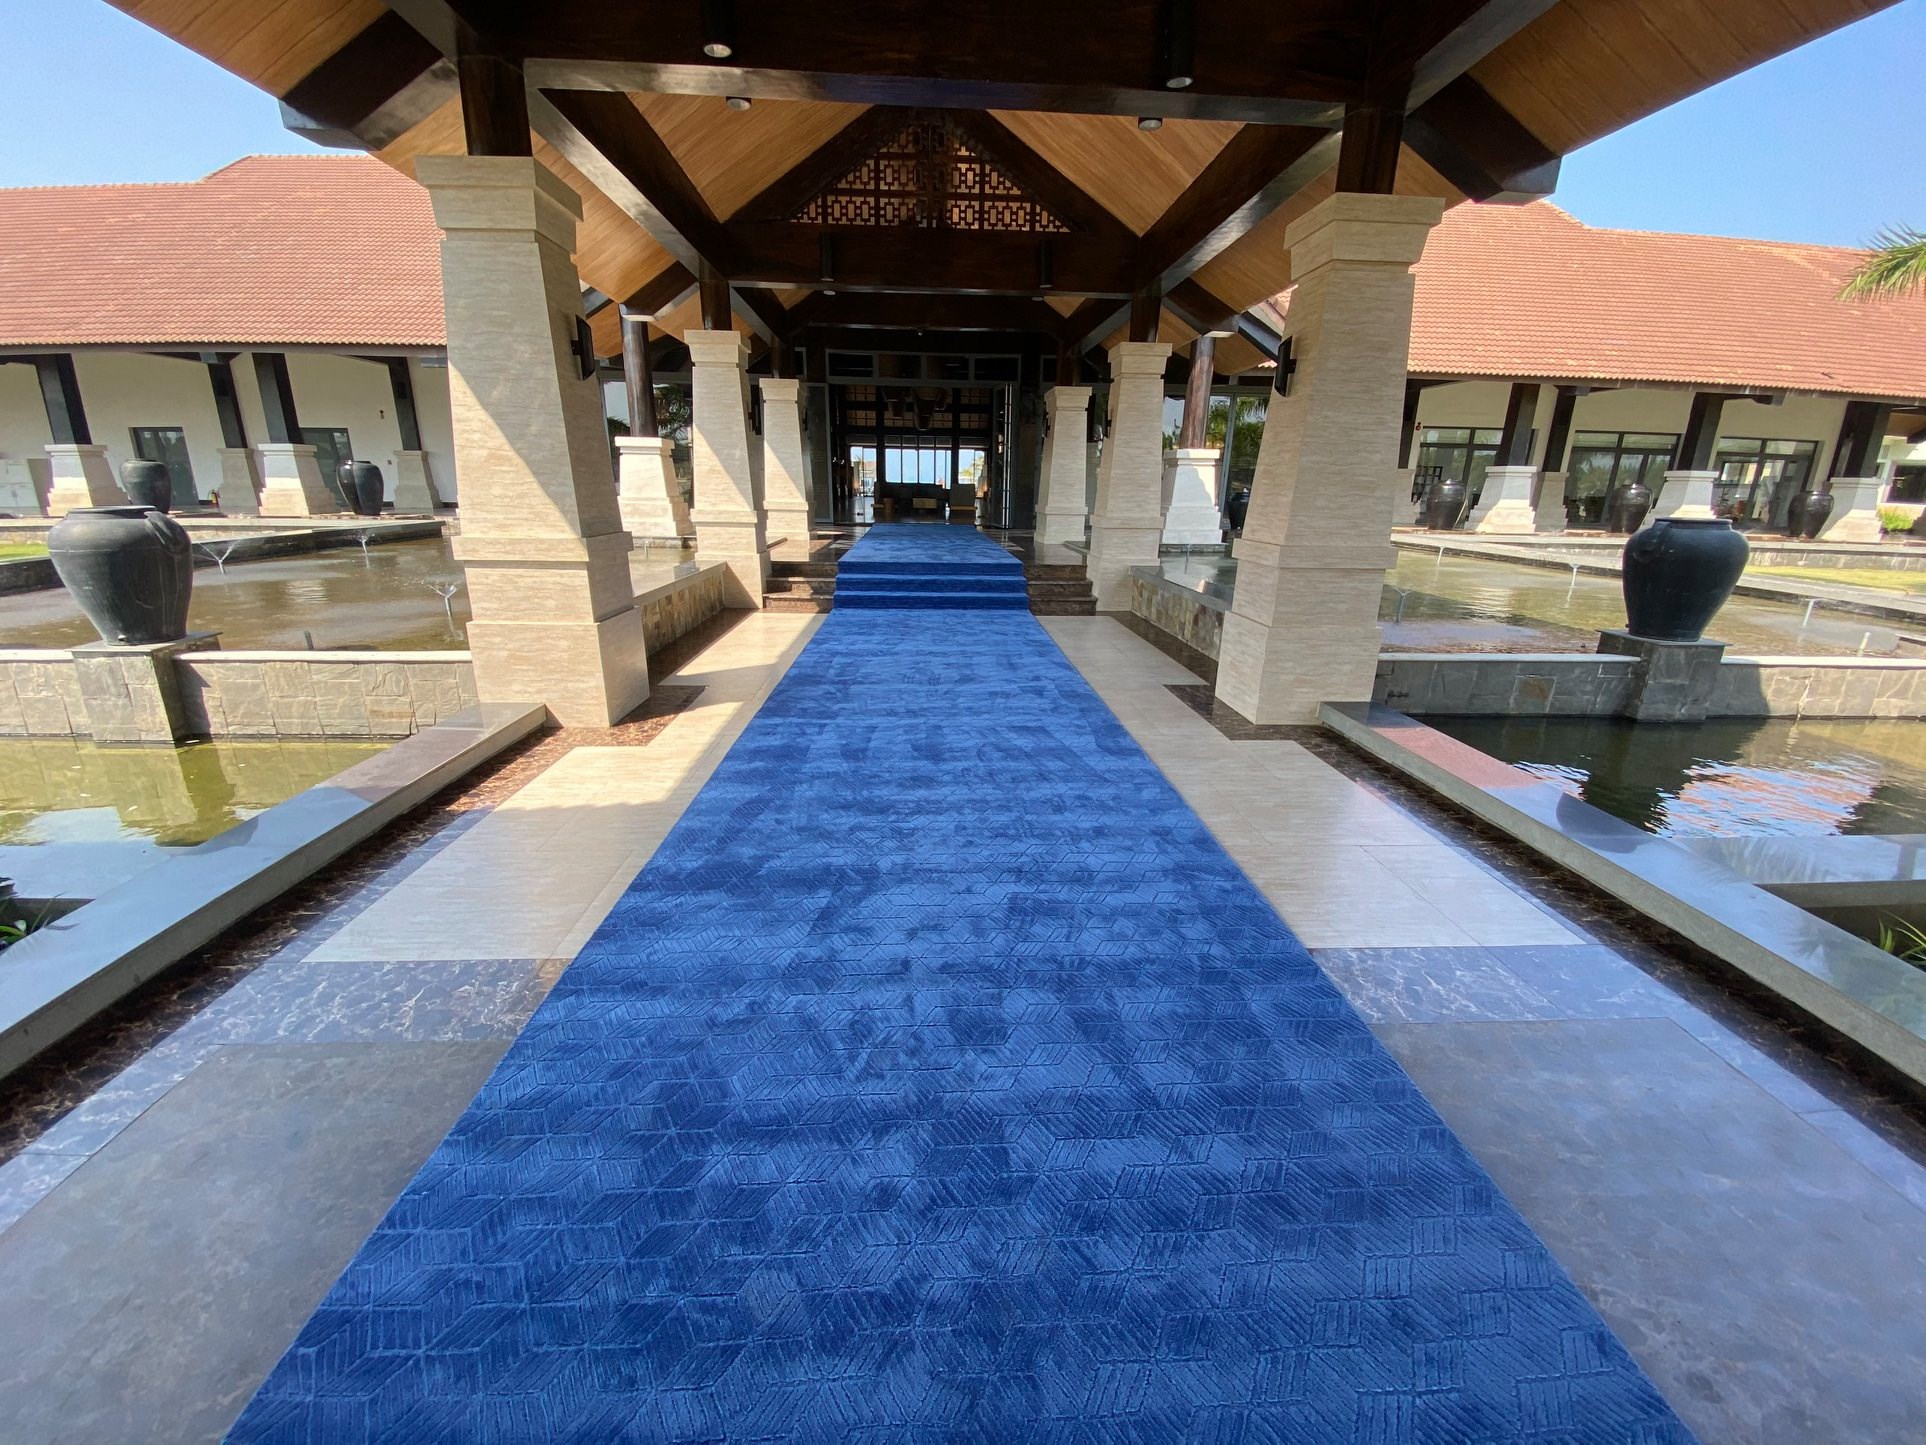 Công trìnhh thảm trải hành lang lối đi khu resort cao cấp được thiết kế và sản xuất theo thương hiệu thảm len hàng kênh